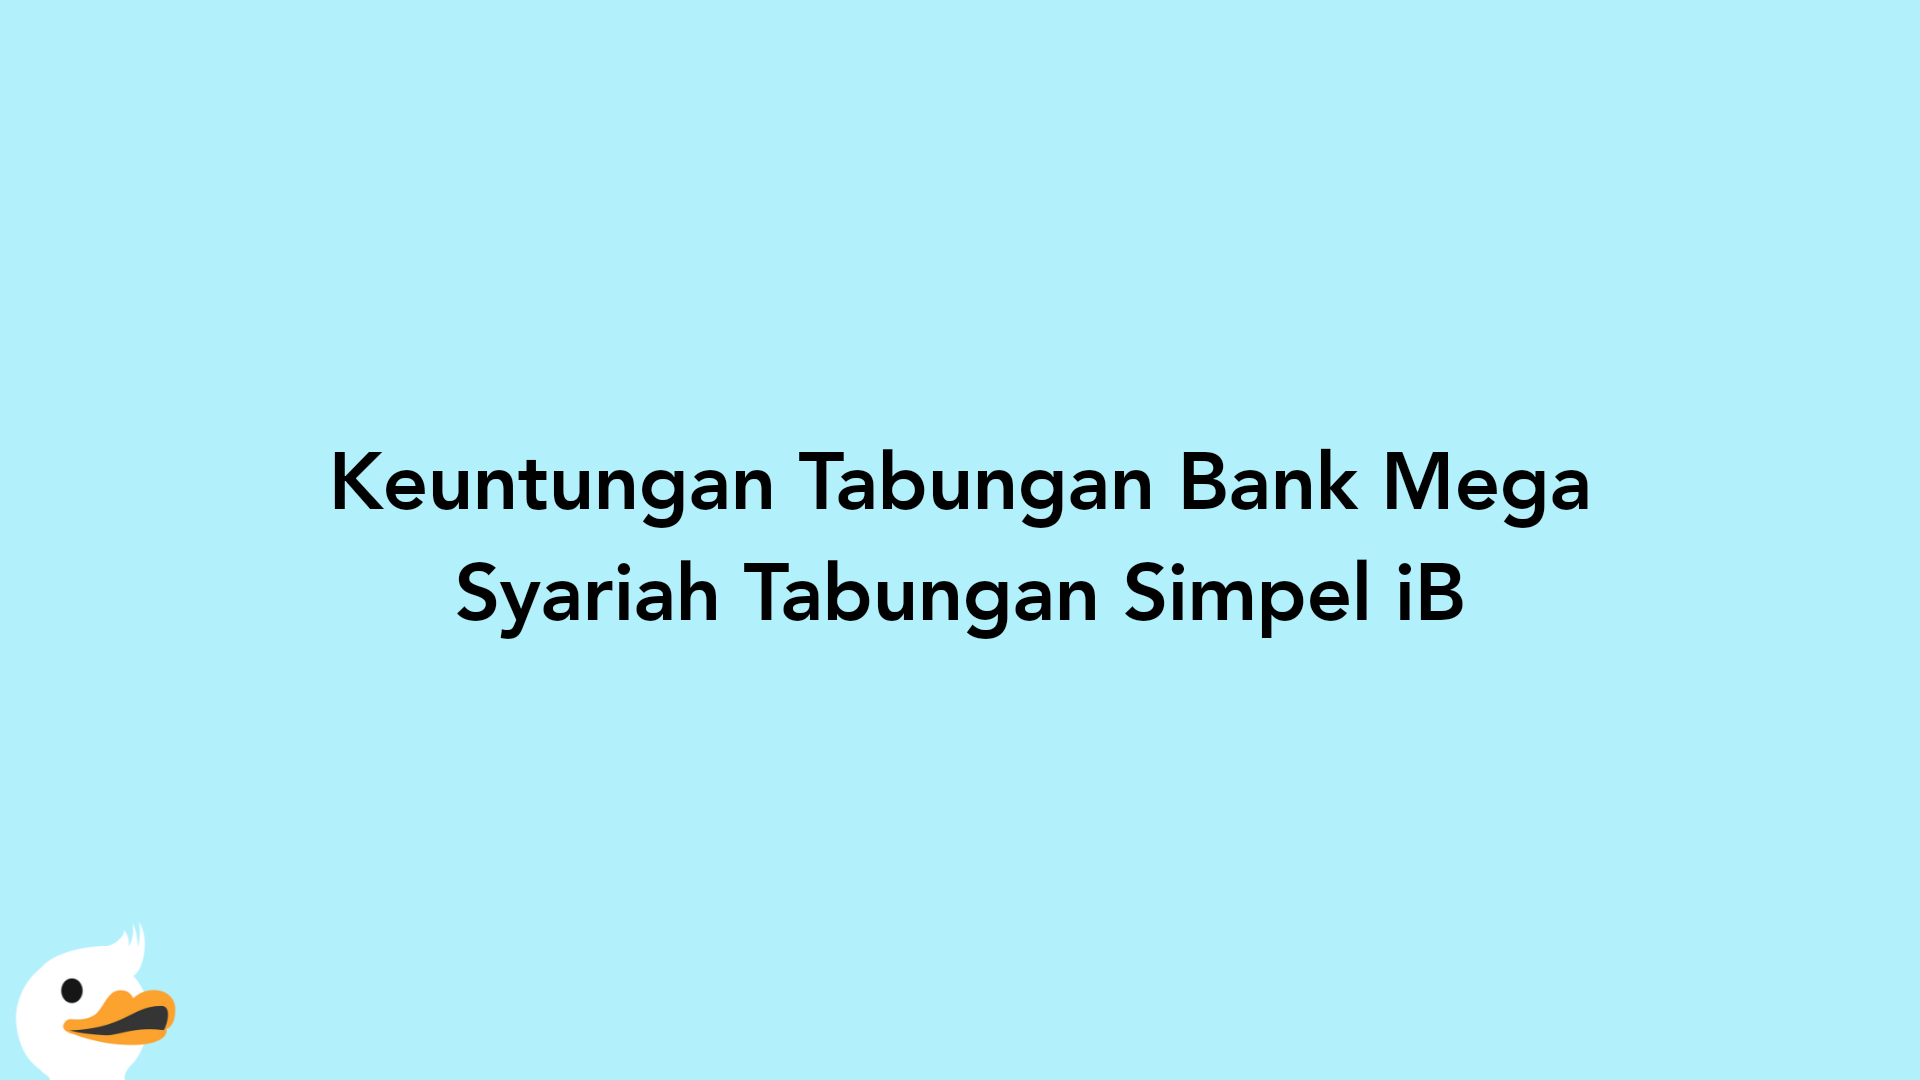 Keuntungan Tabungan Bank Mega Syariah Tabungan Simpel iB